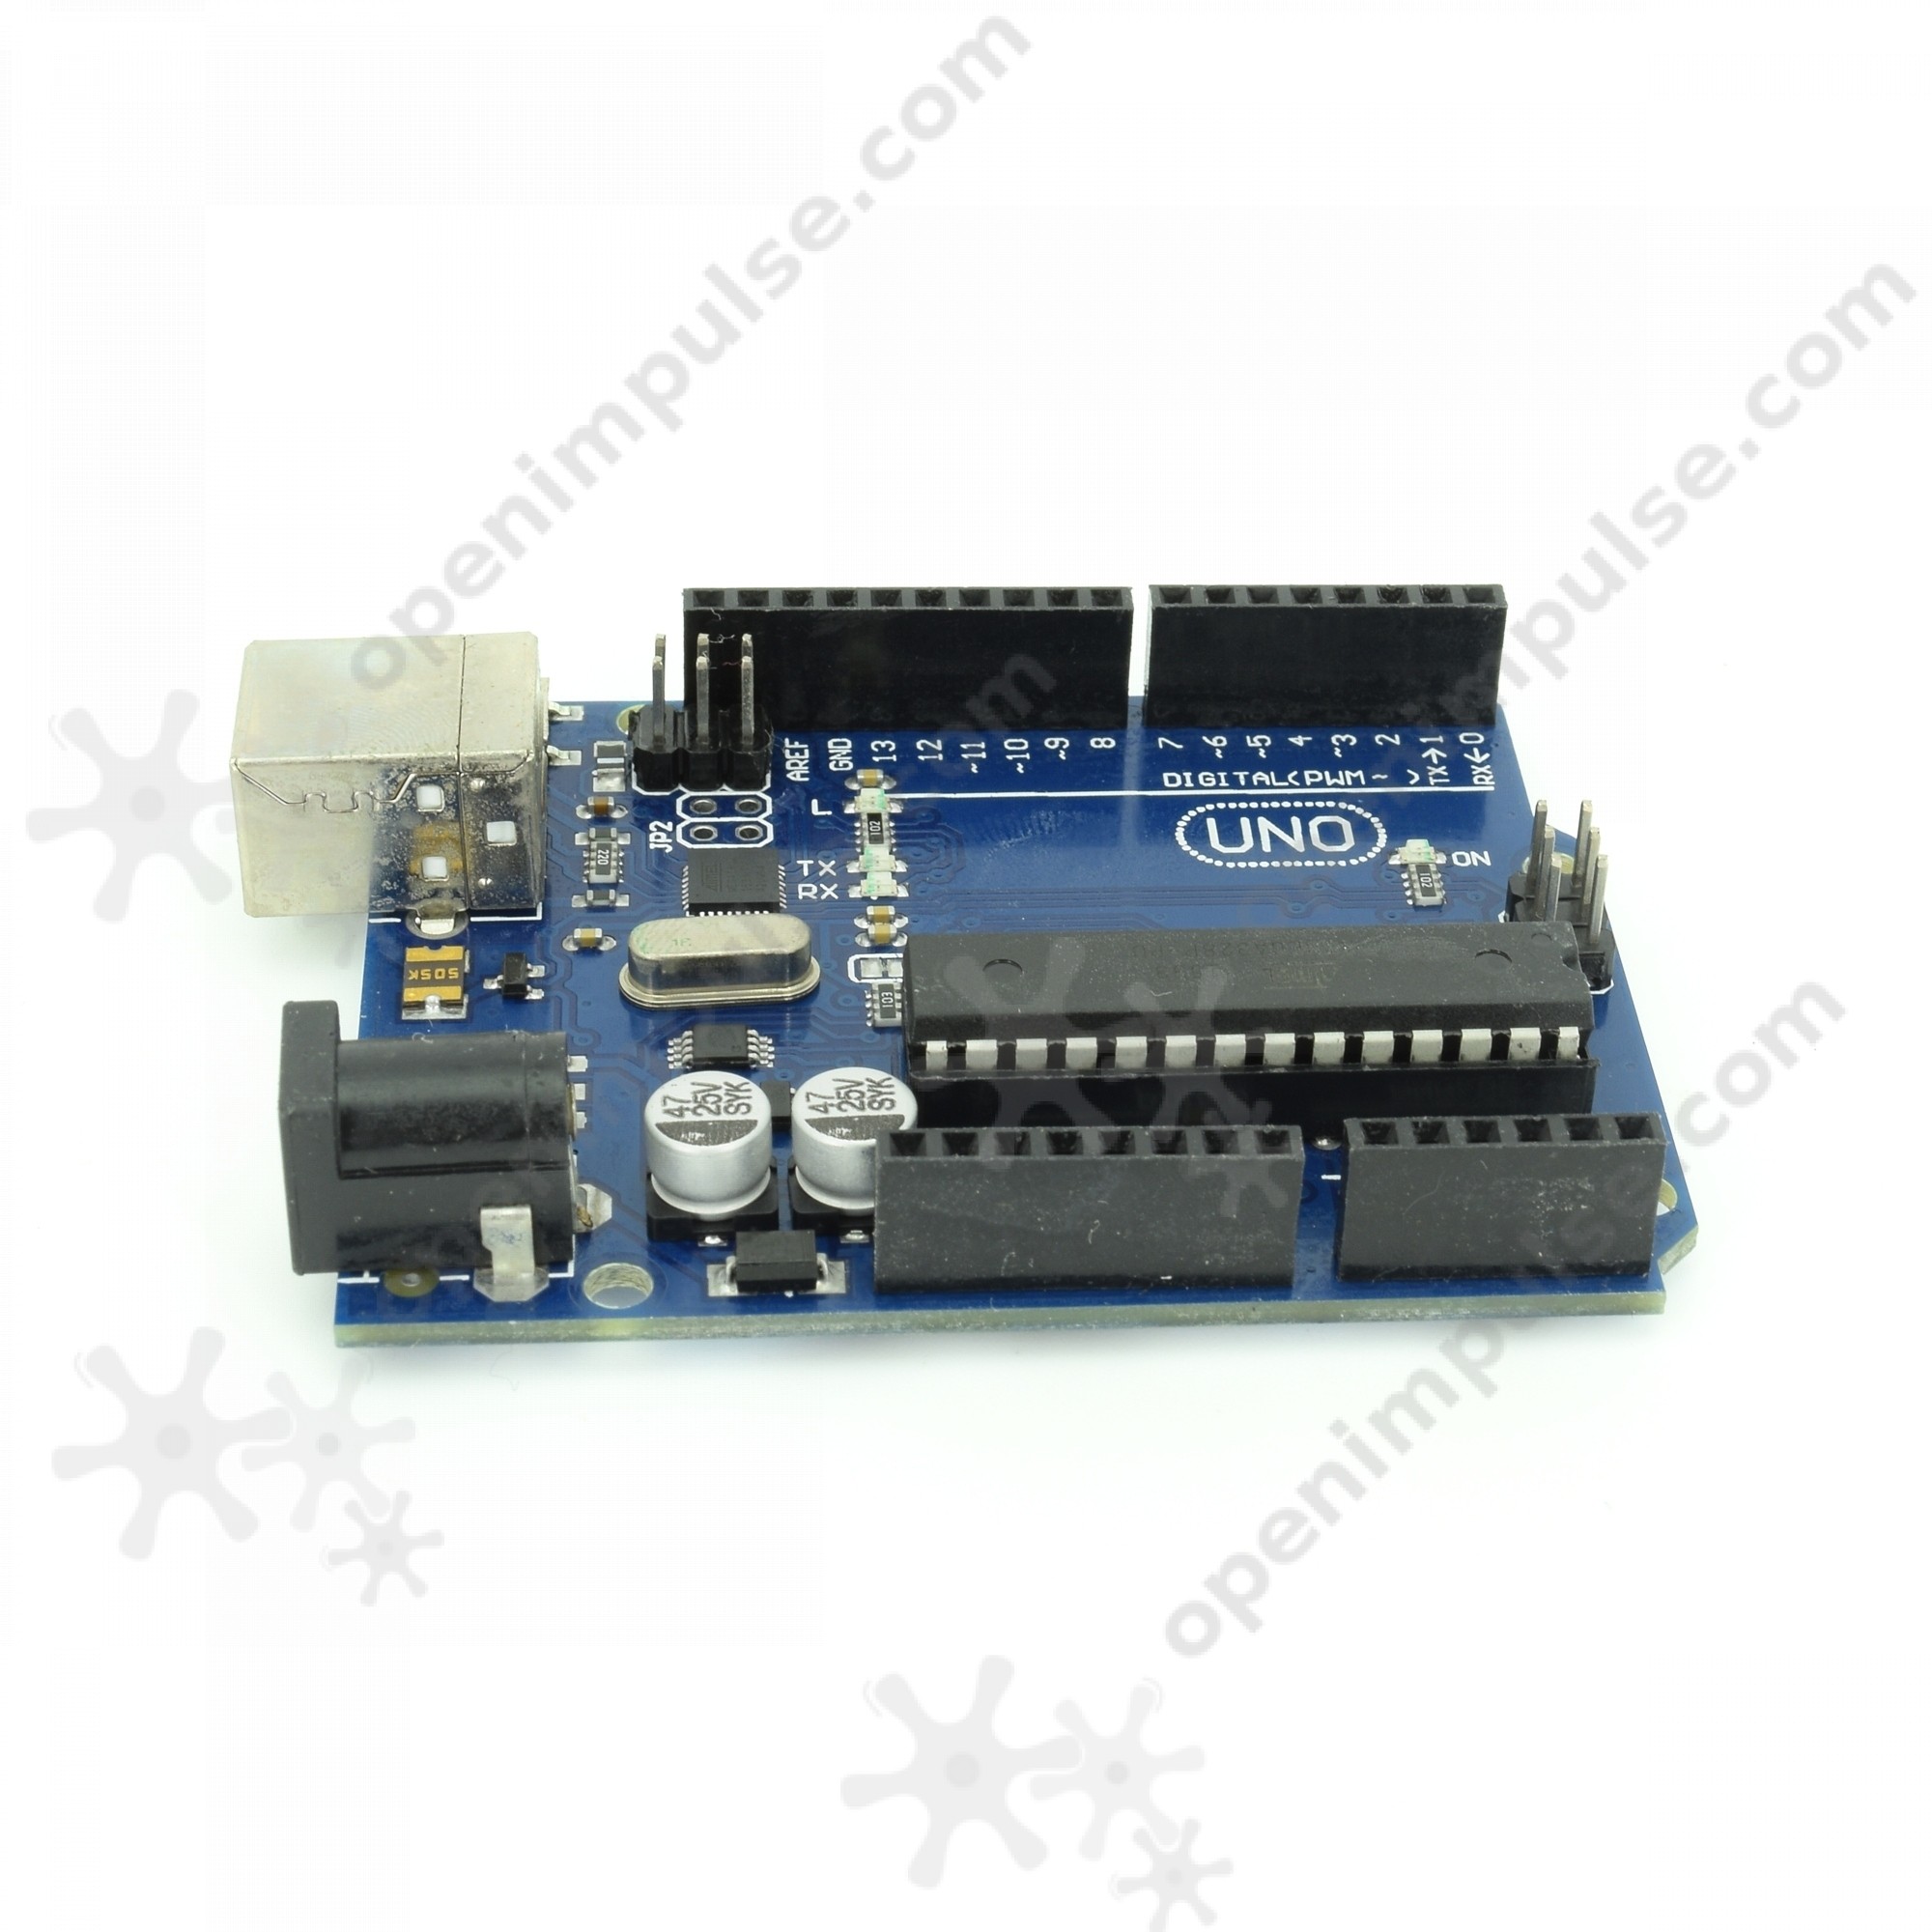 Sunigo 2pcs UNO R3 ATmega328P ATMEGA16U2 Development Board Compatible with UNO R3 Arduino 